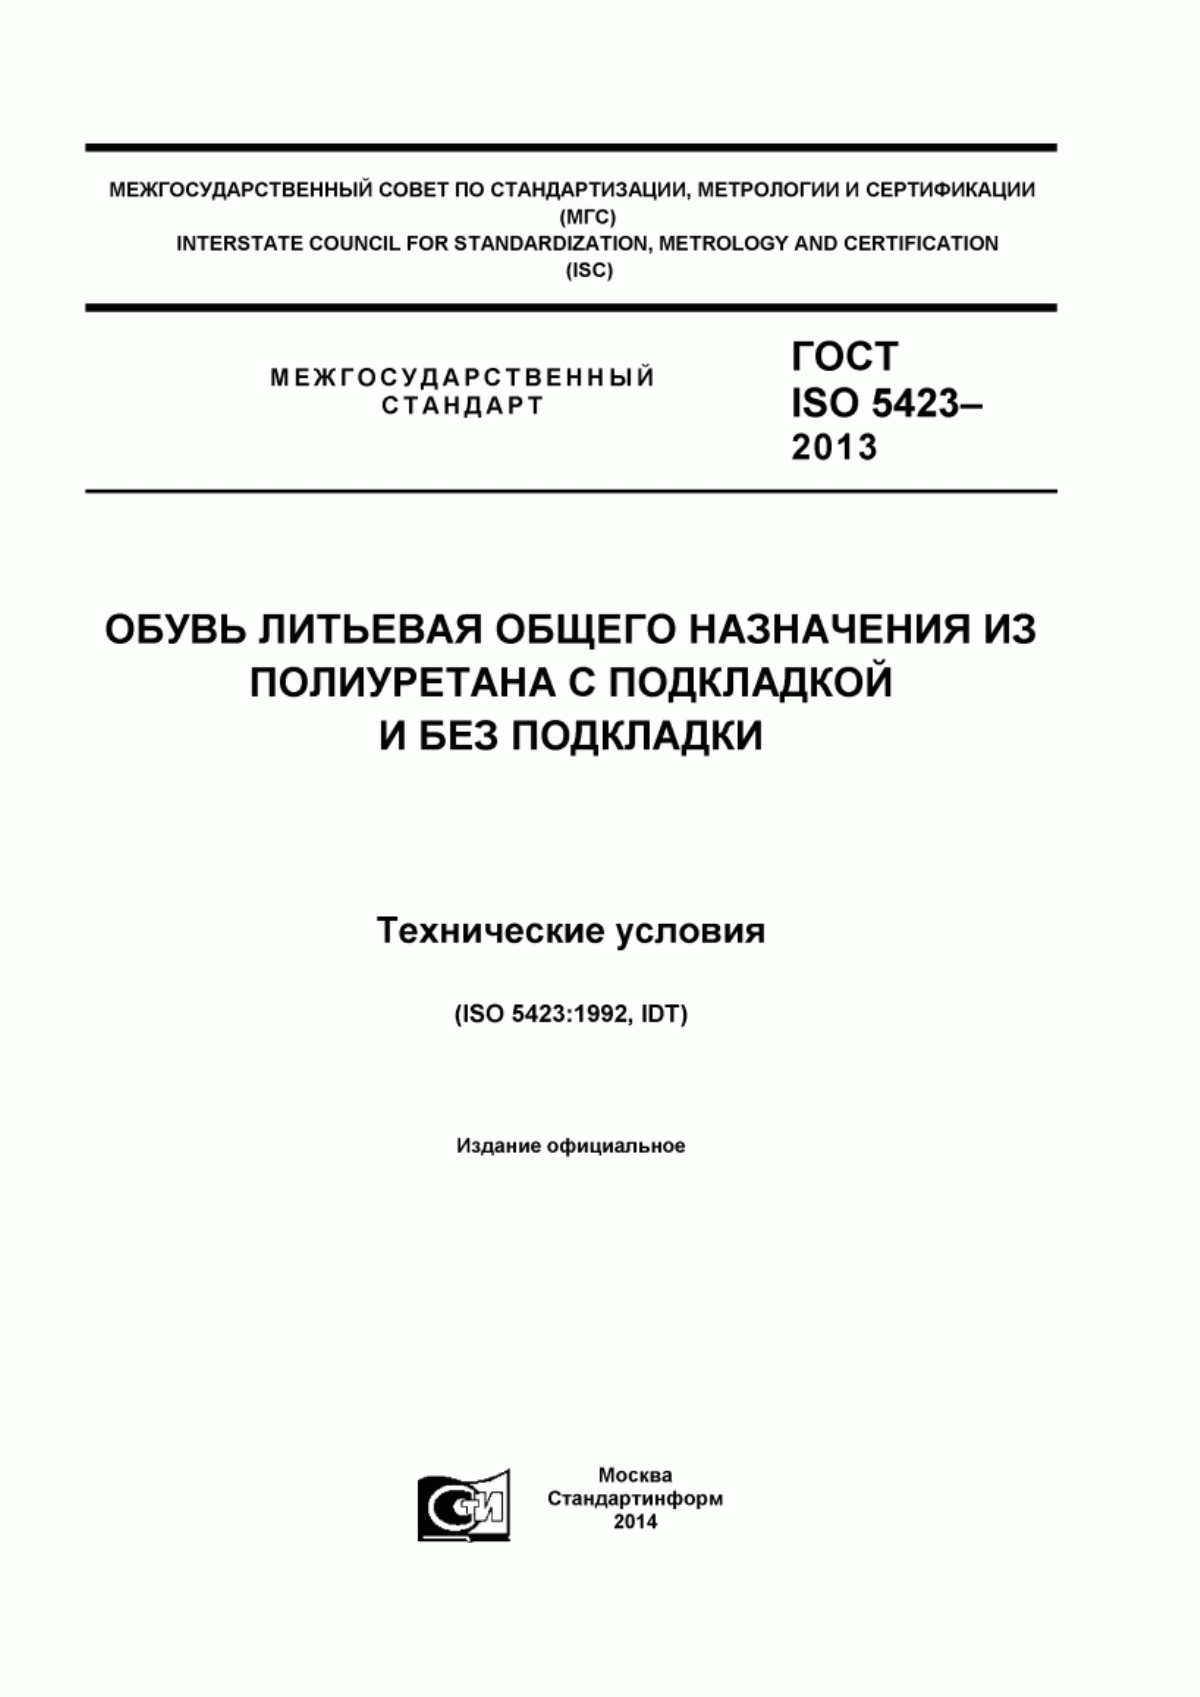 ГОСТ ISO 5423-2013 Обувь литьевая общего назначения из полиуретана с подкладкой и без подкладки. Технические требования